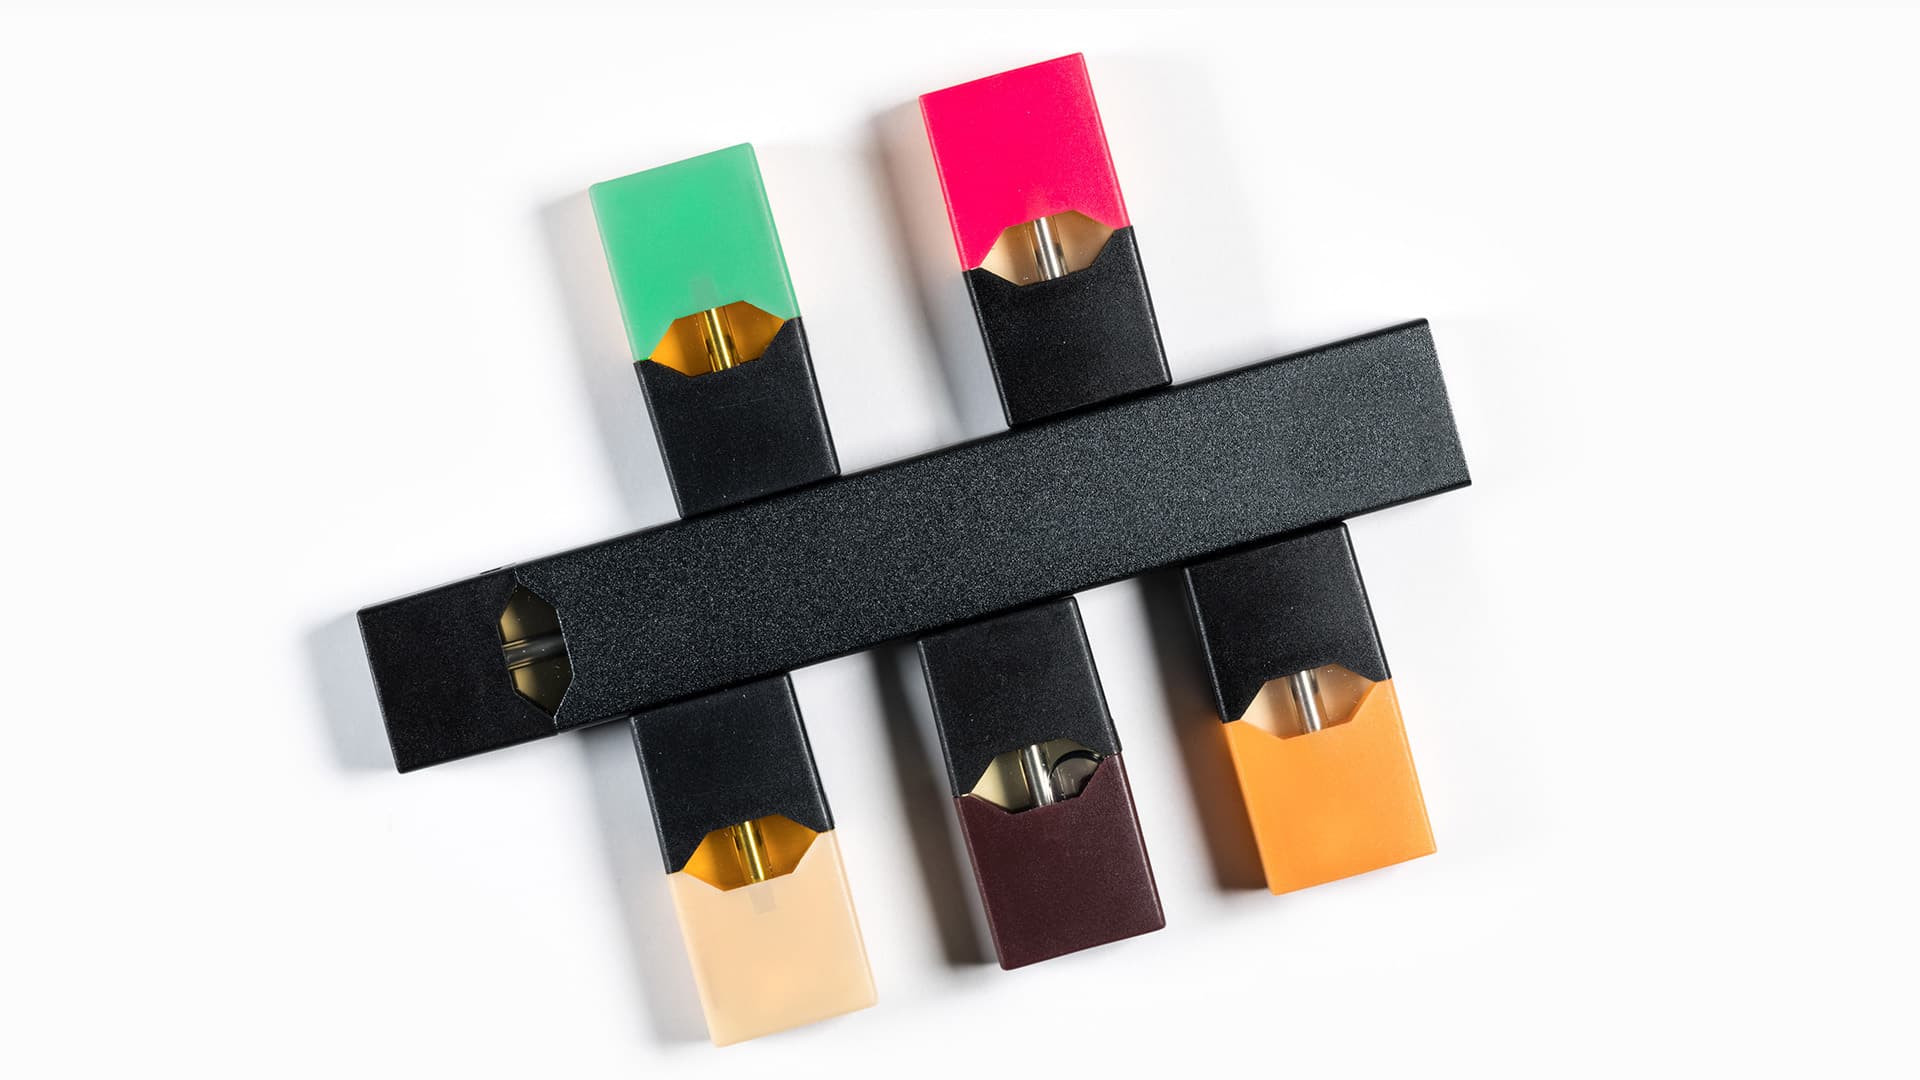 Colored e-cigarettes